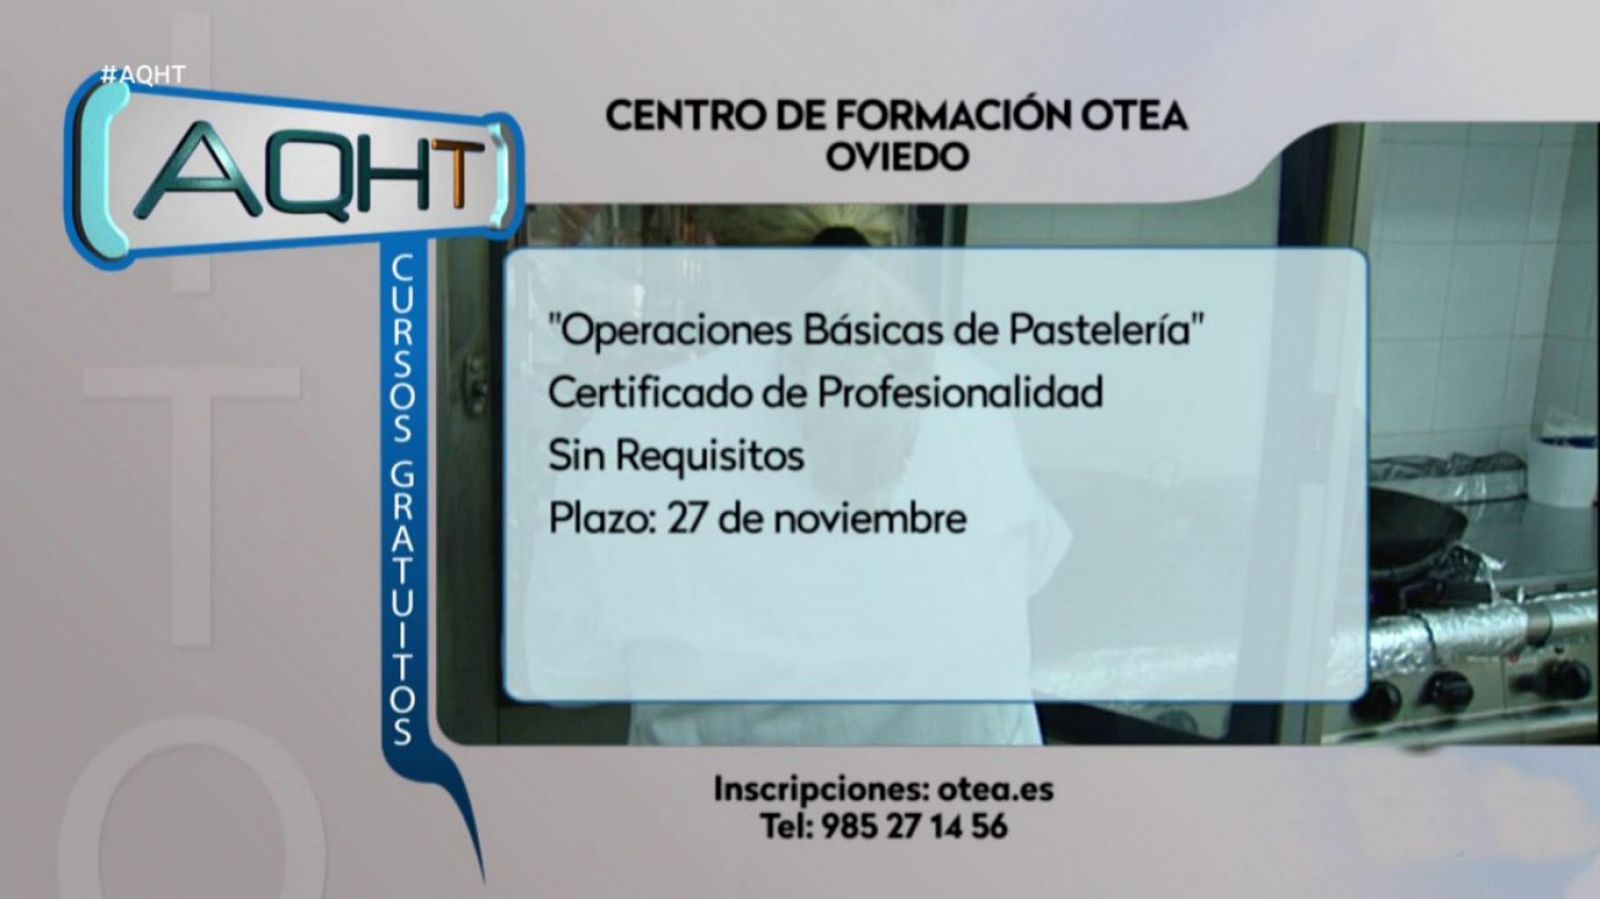 Aquí hay trabajo - 18/11/19 - RTVE.es